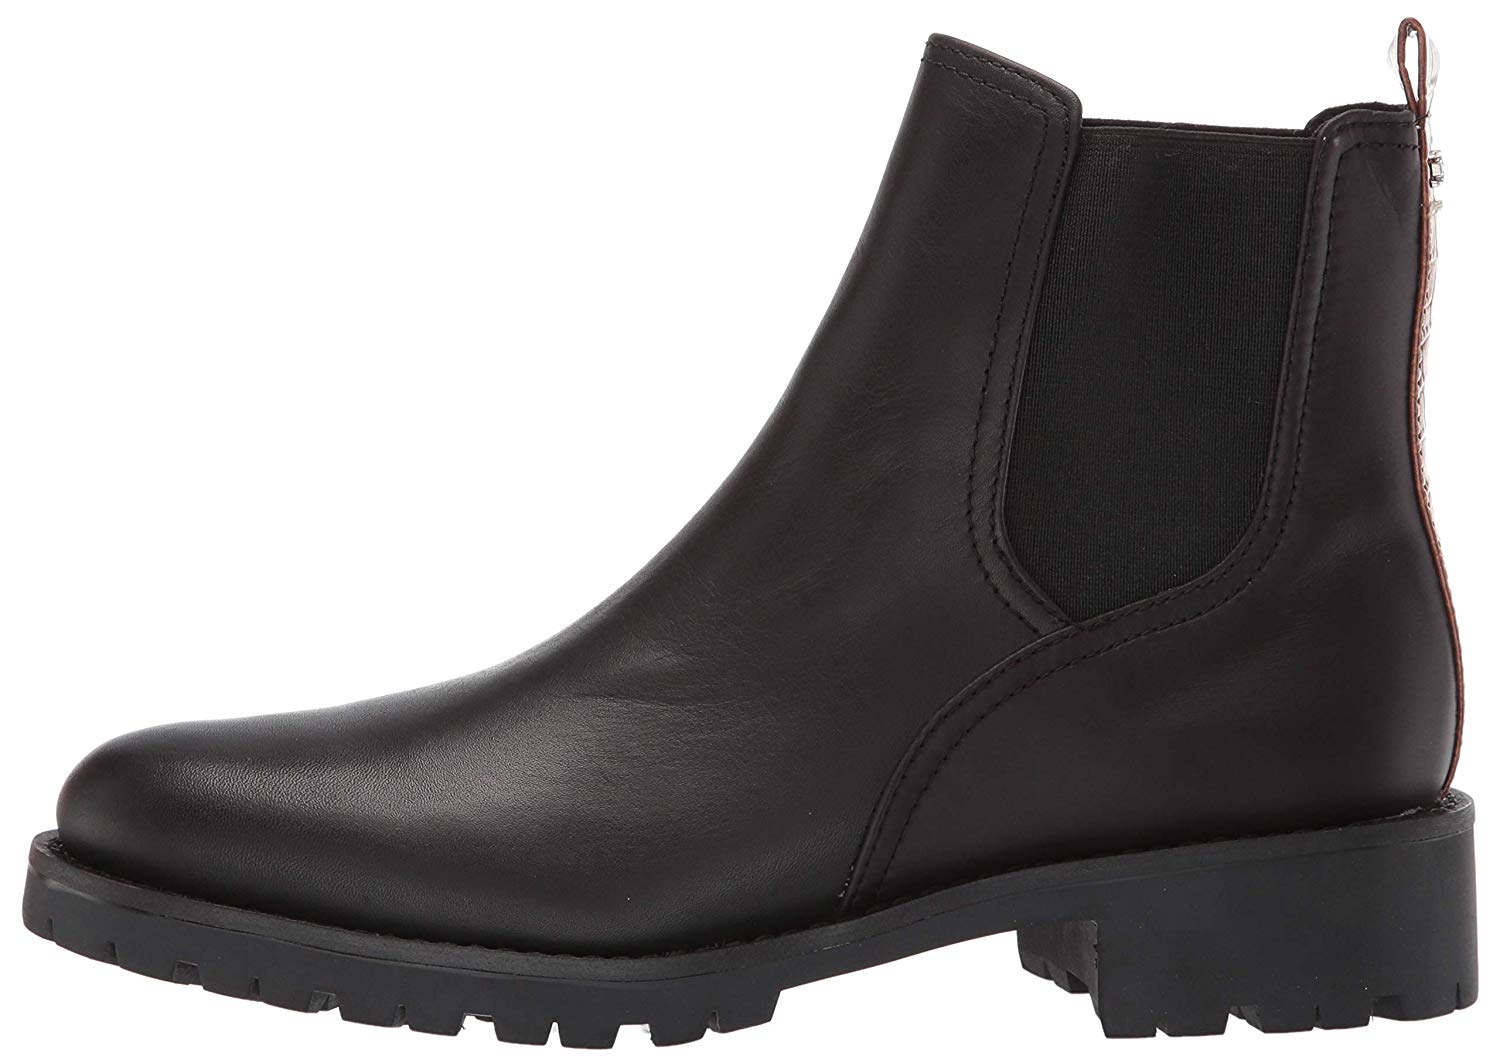 Sam Edelman Women's Jaclyn Ankle Boot, Black Leather, Size 8.5 ZgEc | eBay